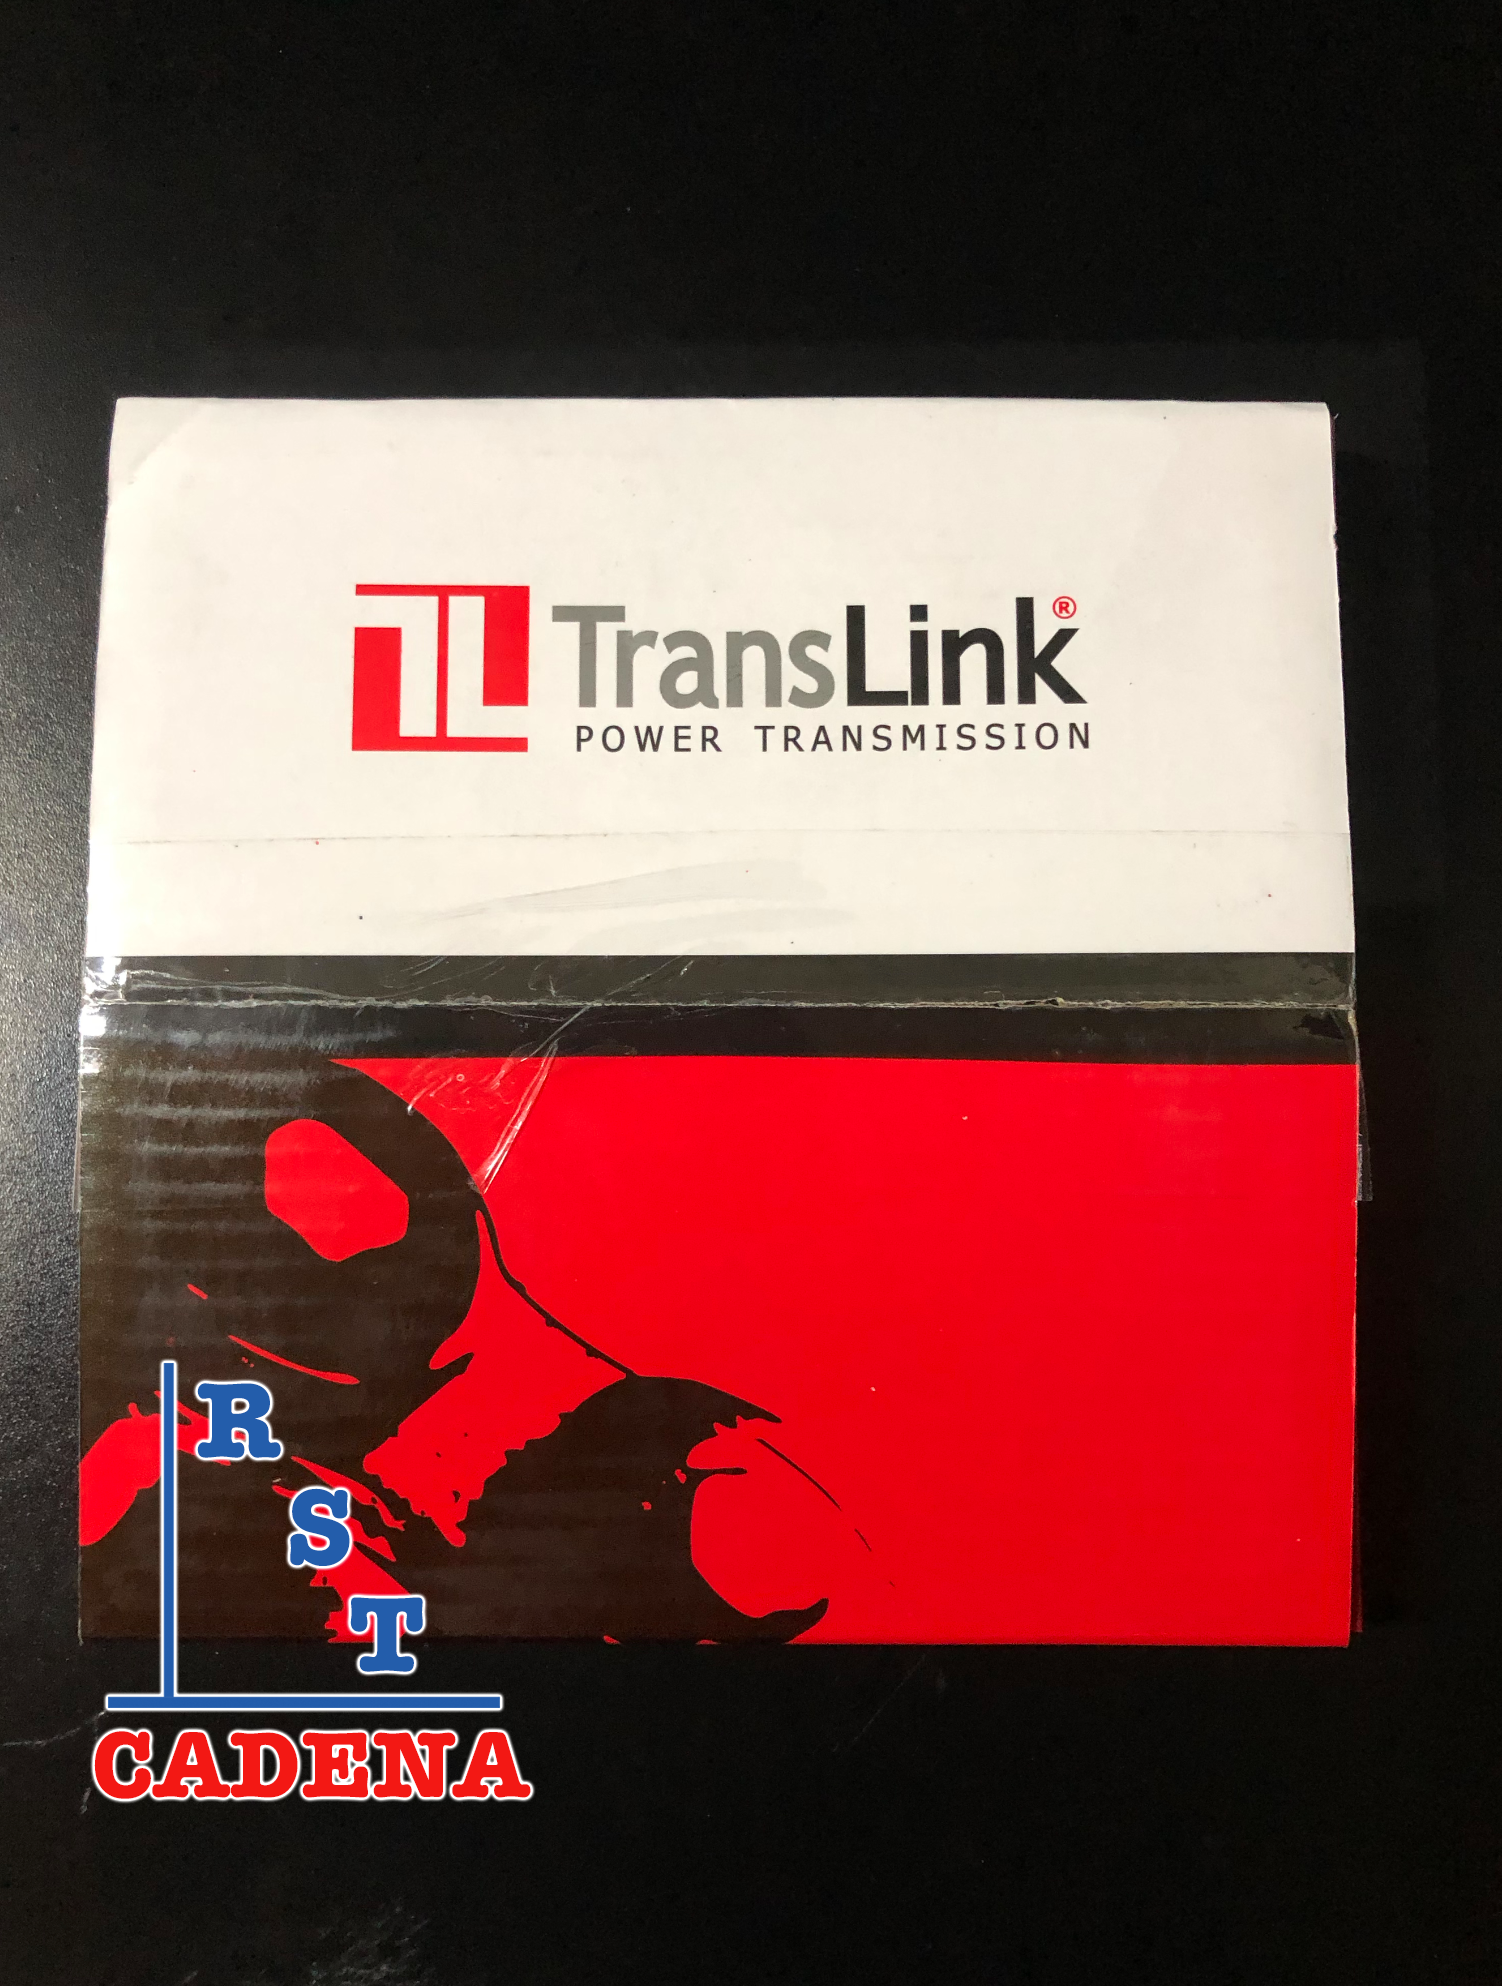 Caja de cadena paso 100-2 TransLink - 0